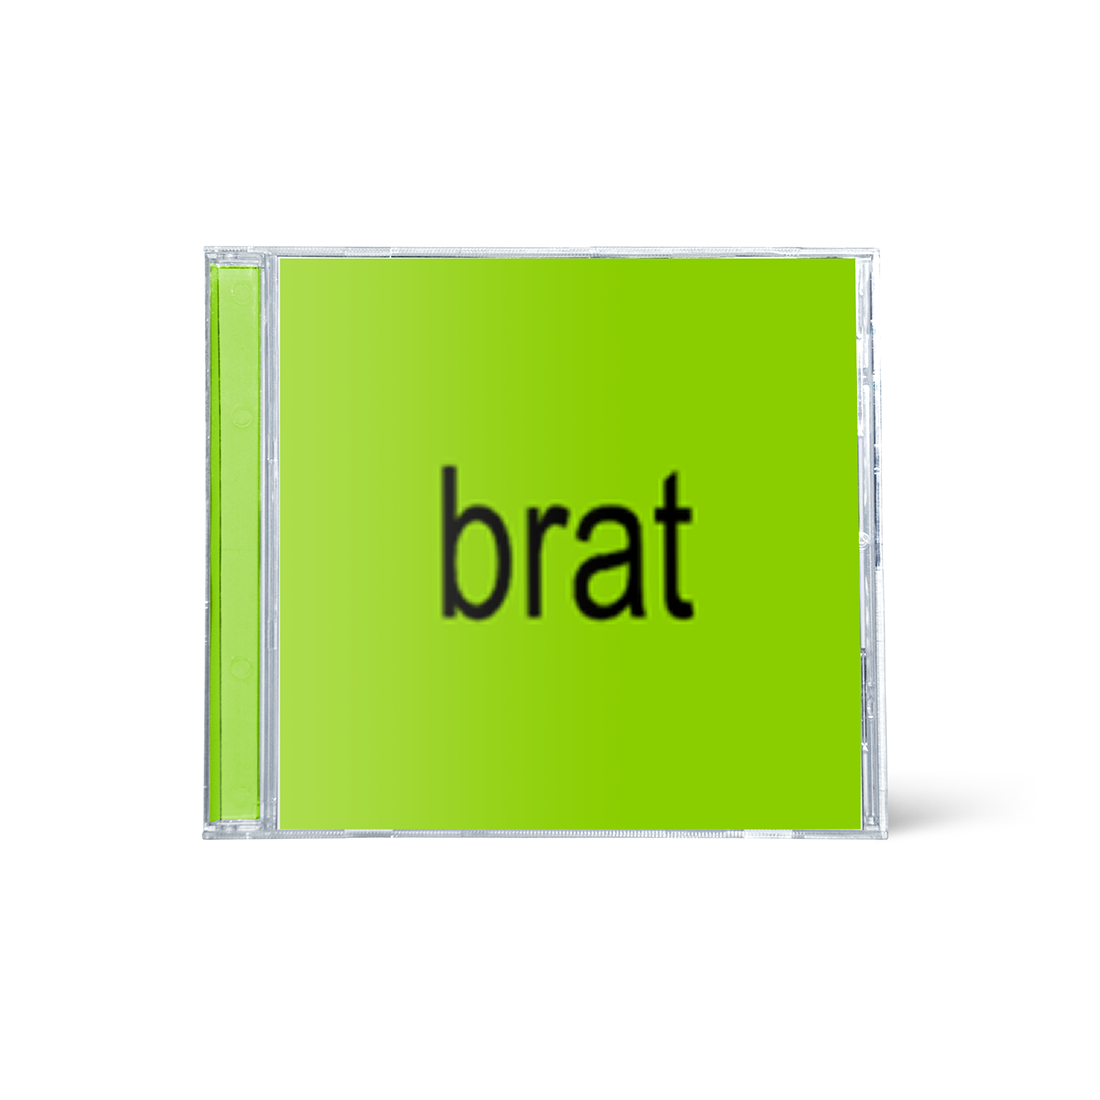 Charli XCX - BRAT: CD